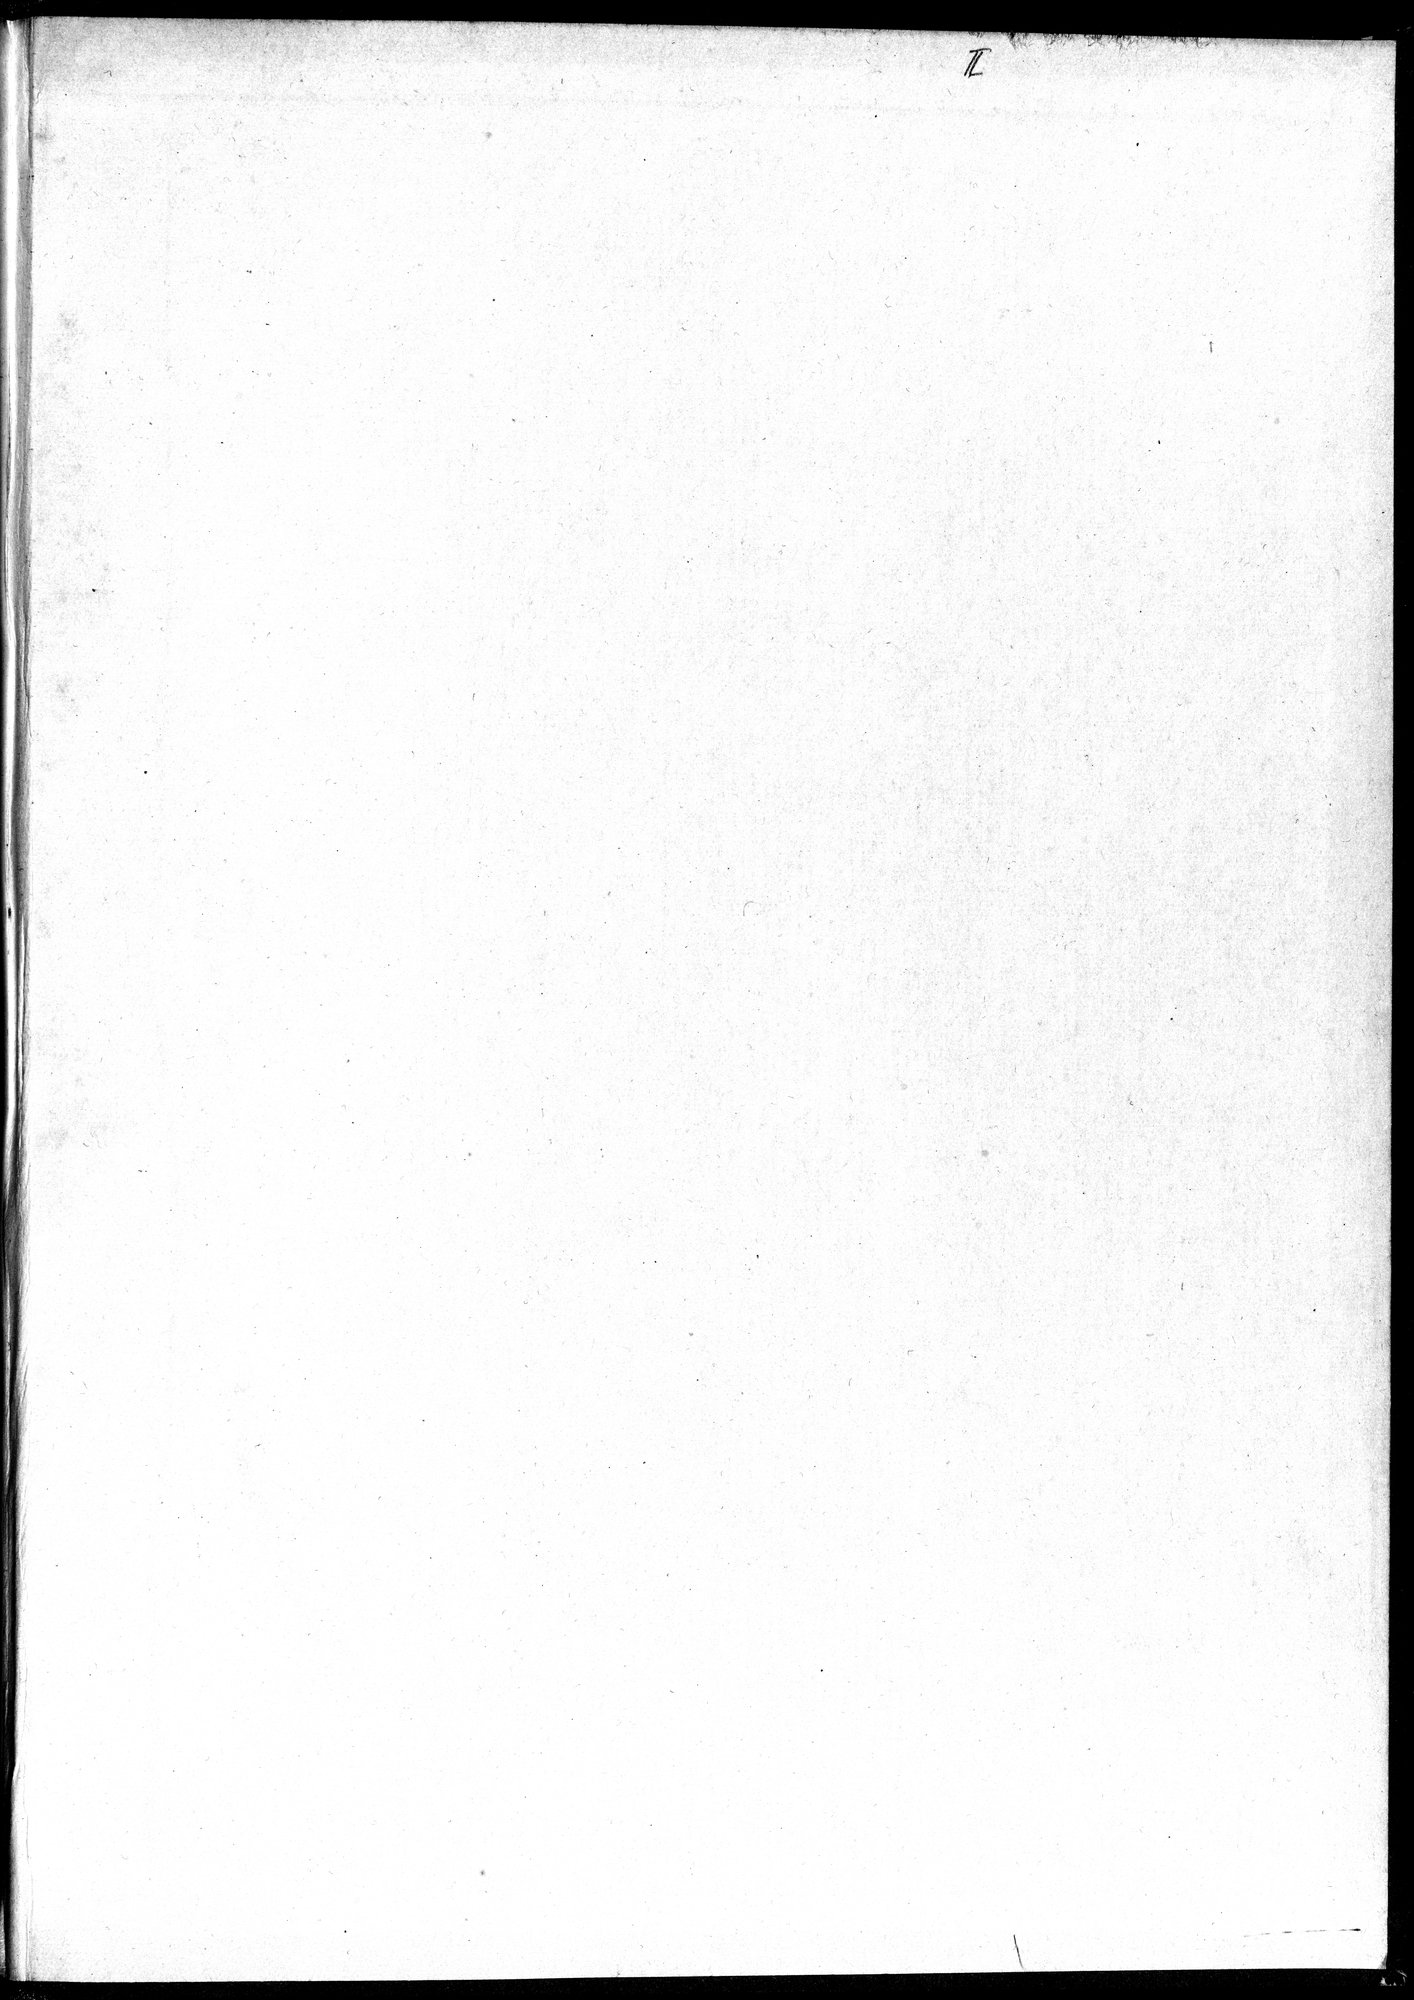 塔里木盆地考古記 : vol.1 / Page 2 (Grayscale High Resolution Image)